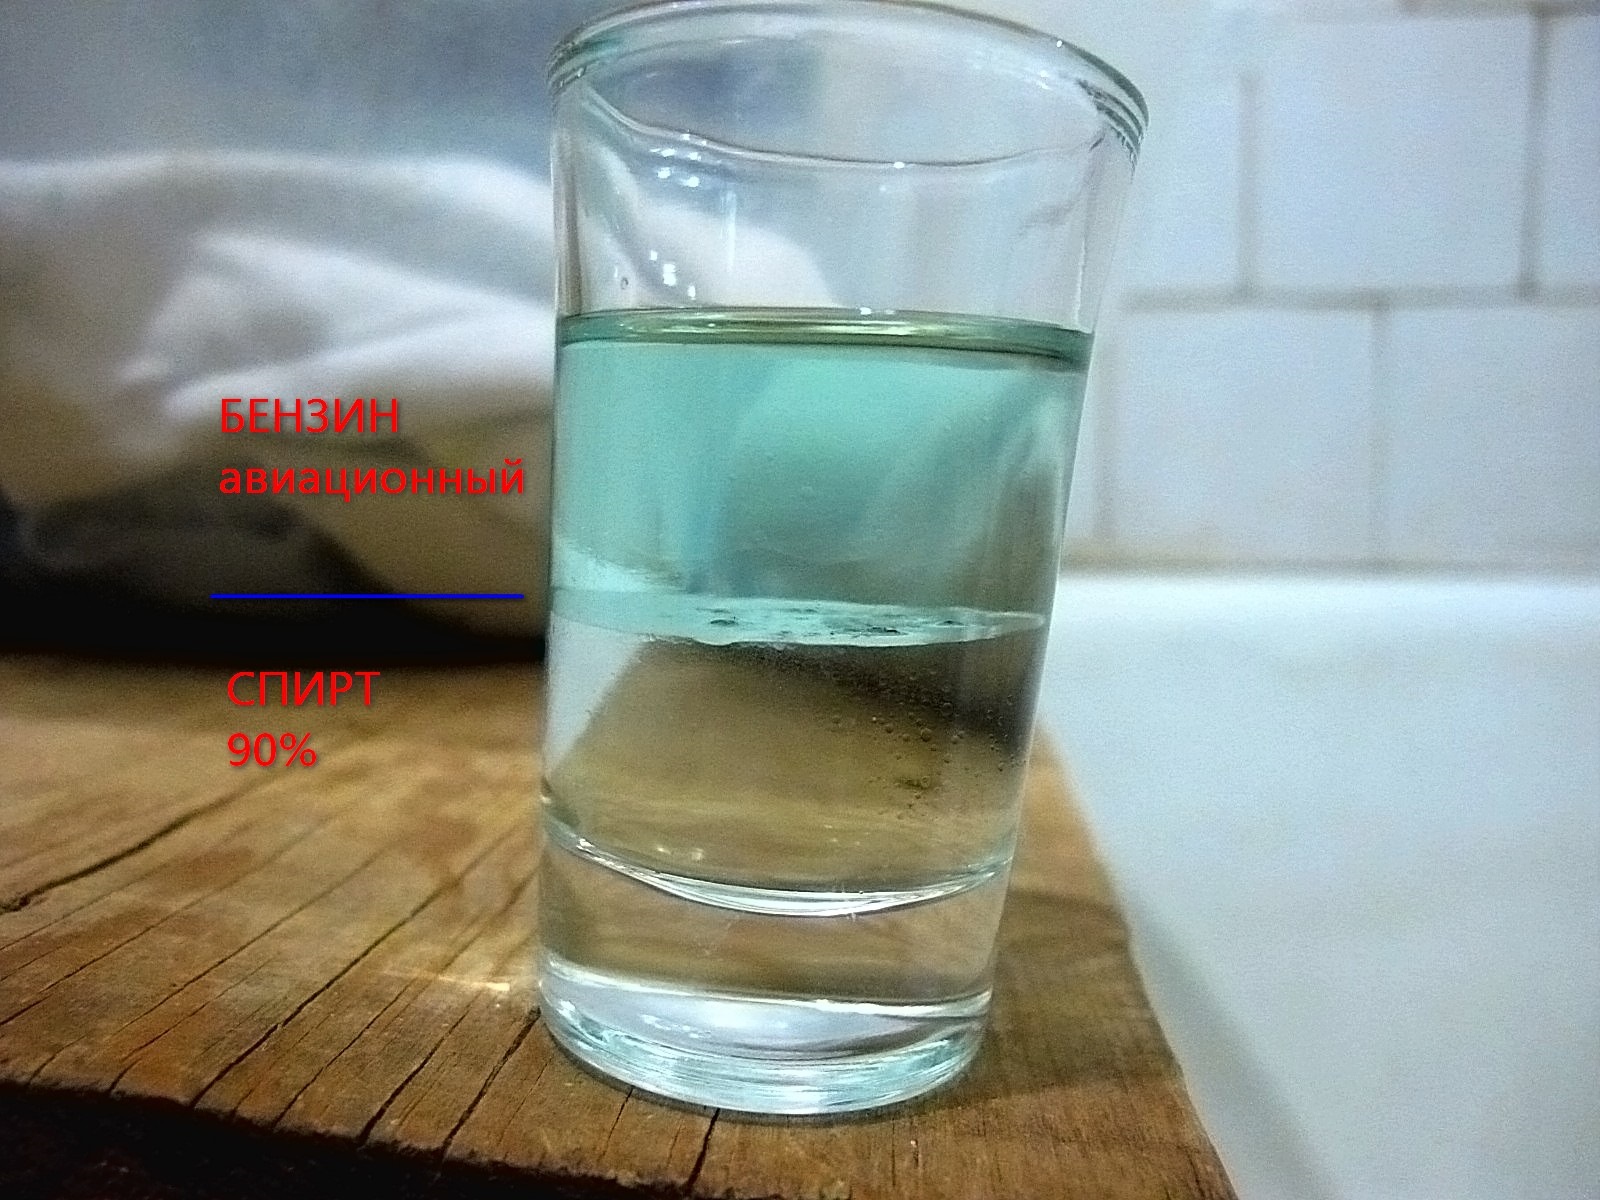 Керосин легче воды